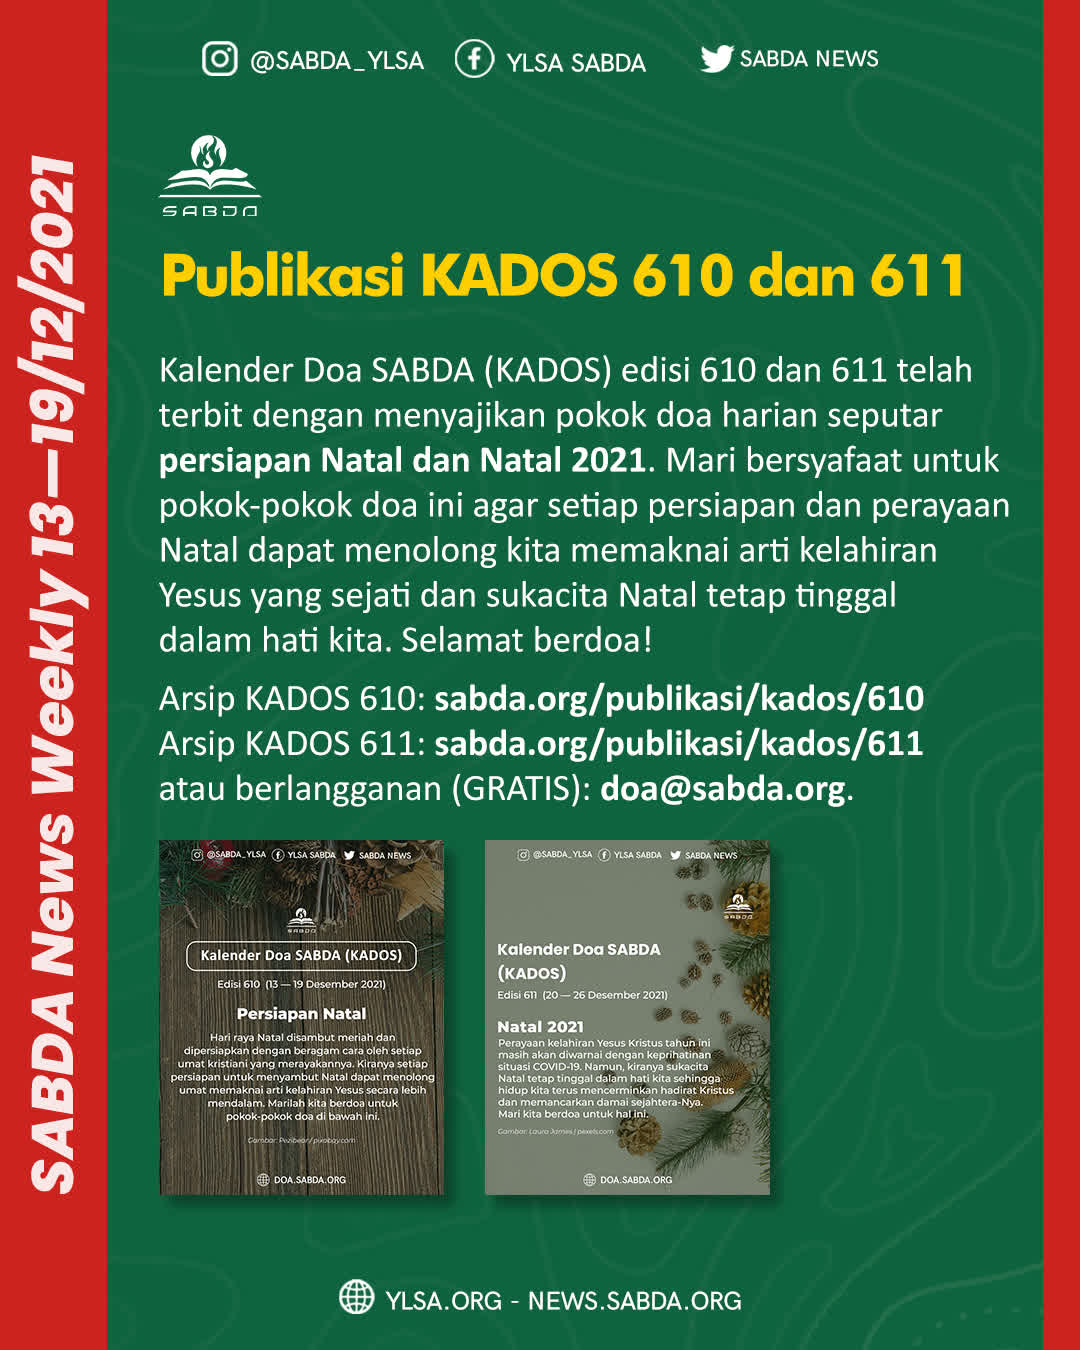 Publikasi KADOS 601 611